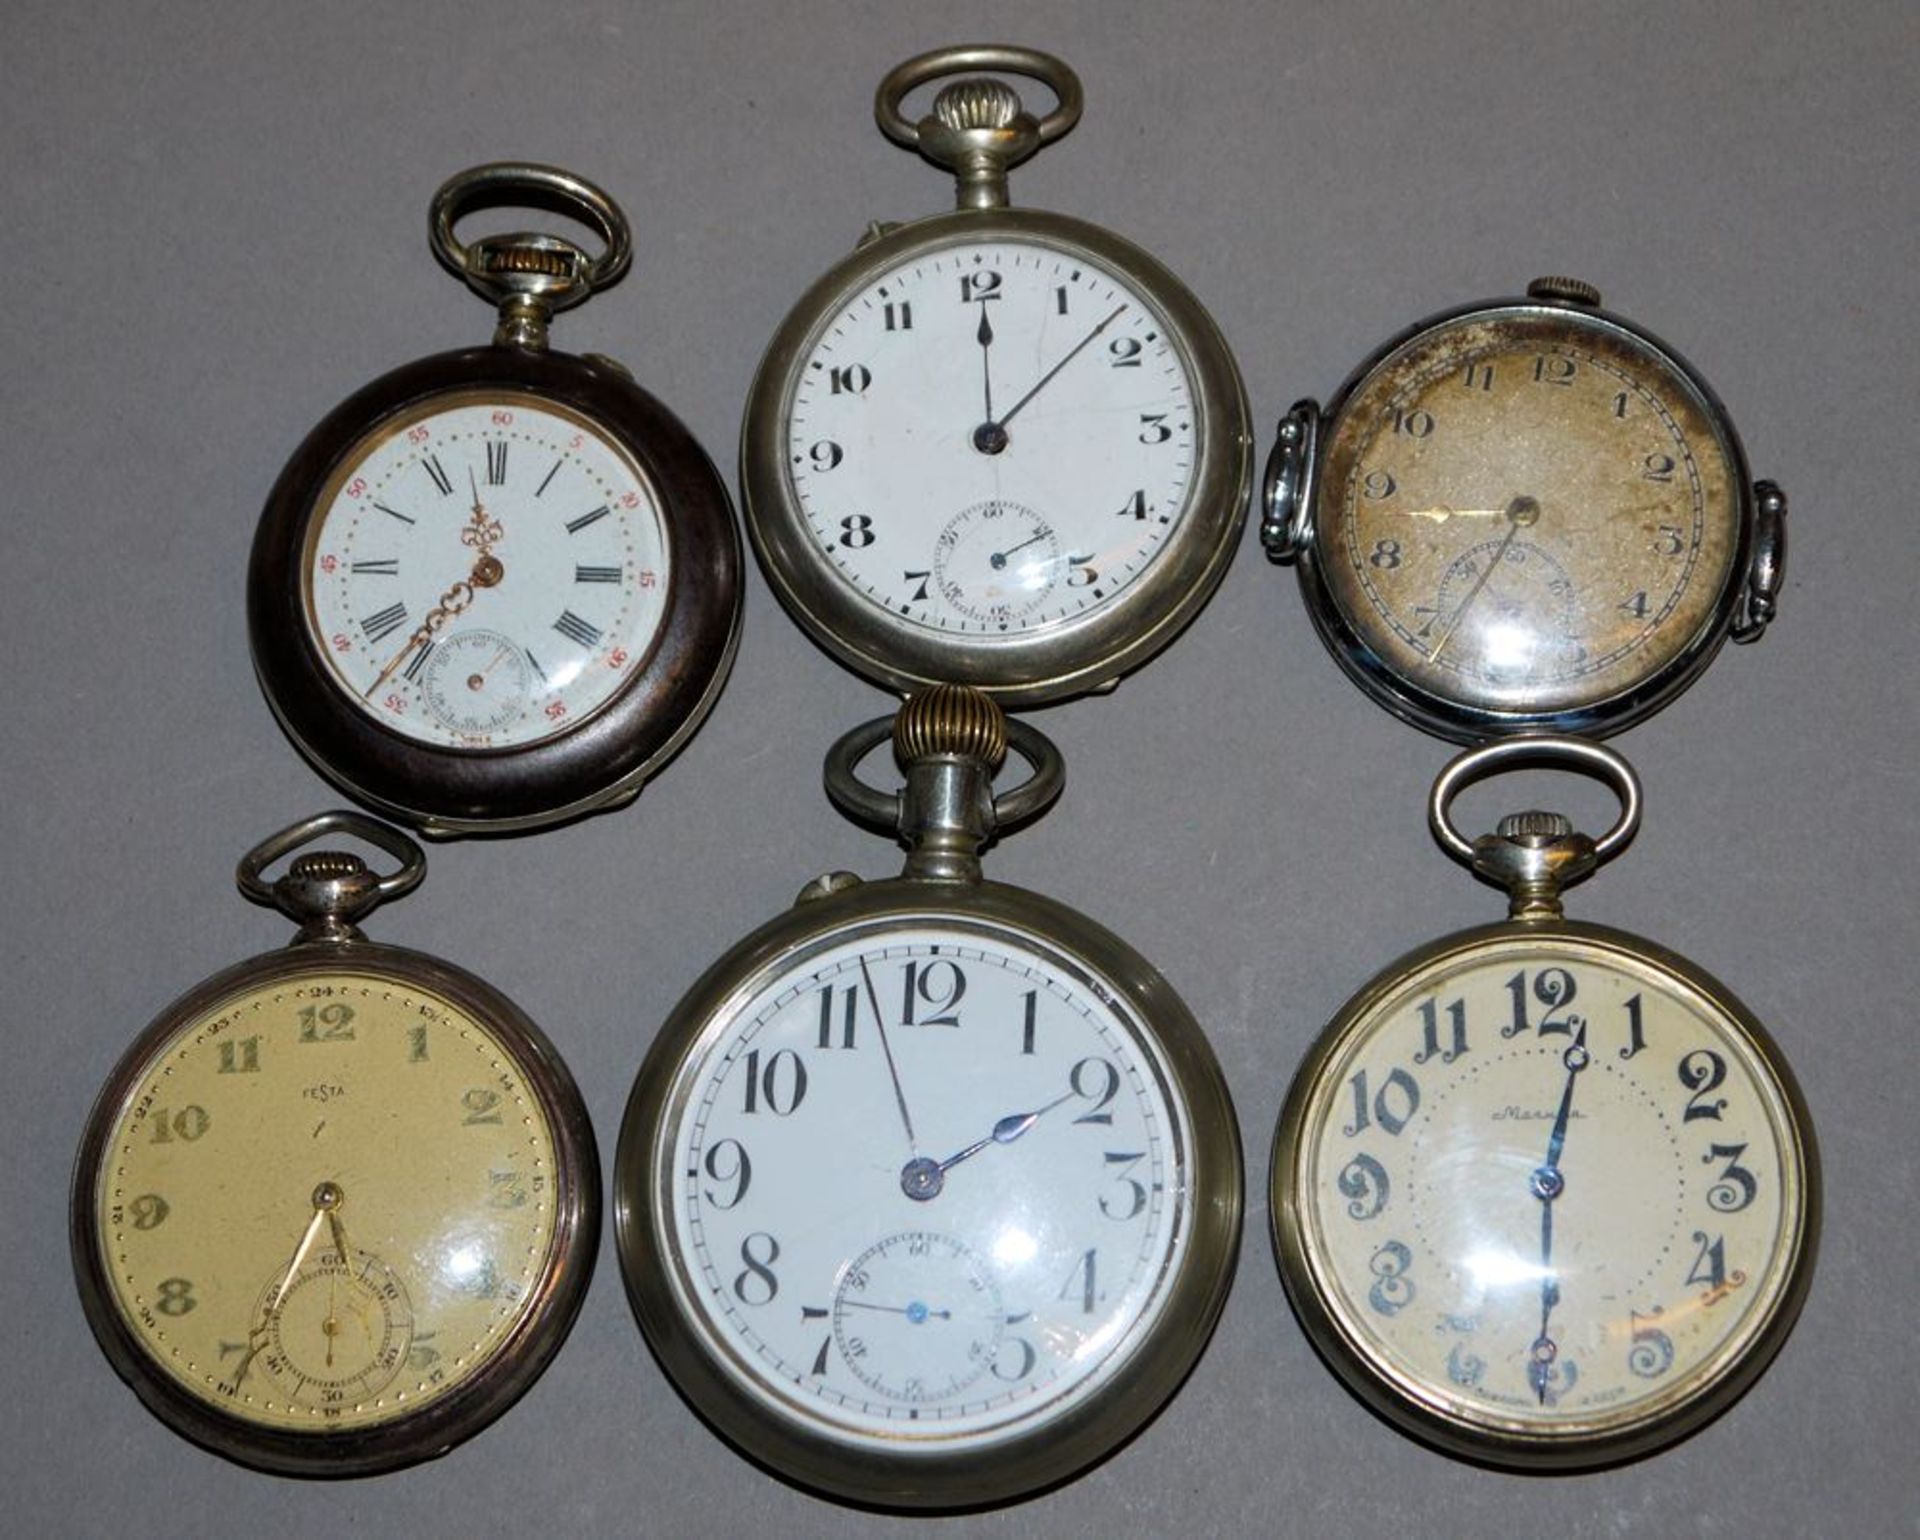 Fünf Taschen- und eine Armbanduhr ca. 1910 - 1930